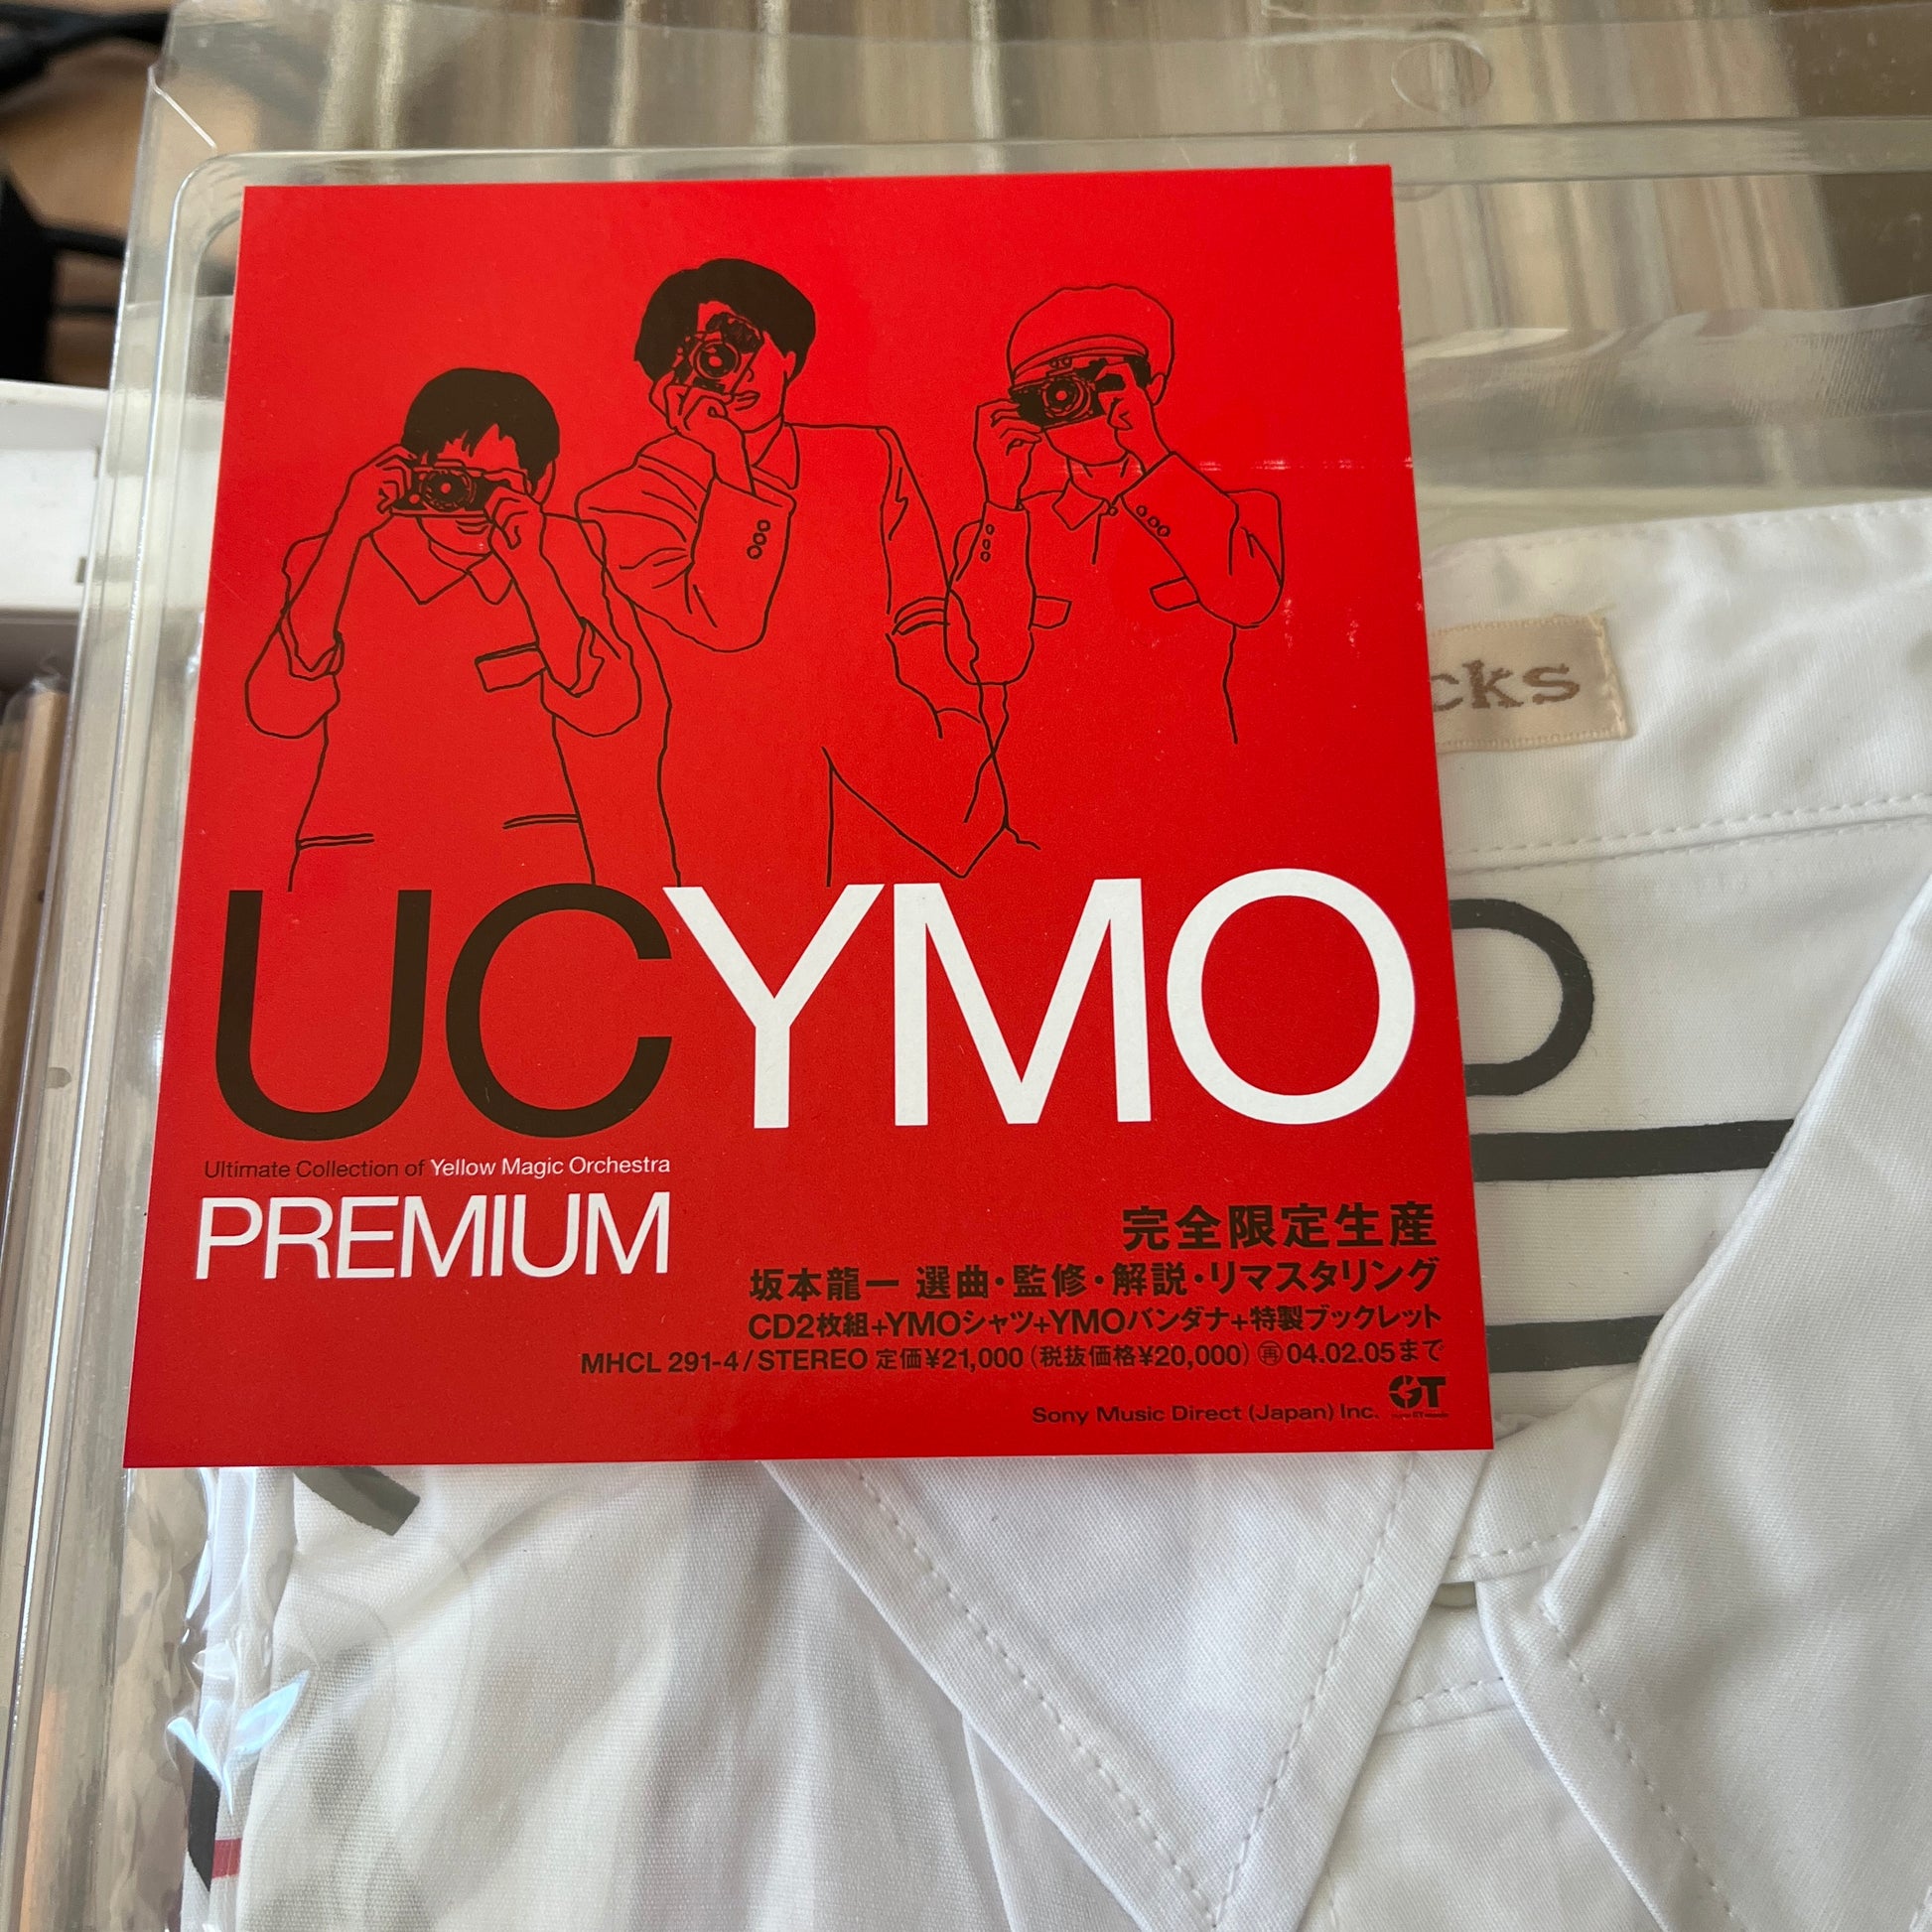 UC YMO PREMIUM 完全限定生産盤